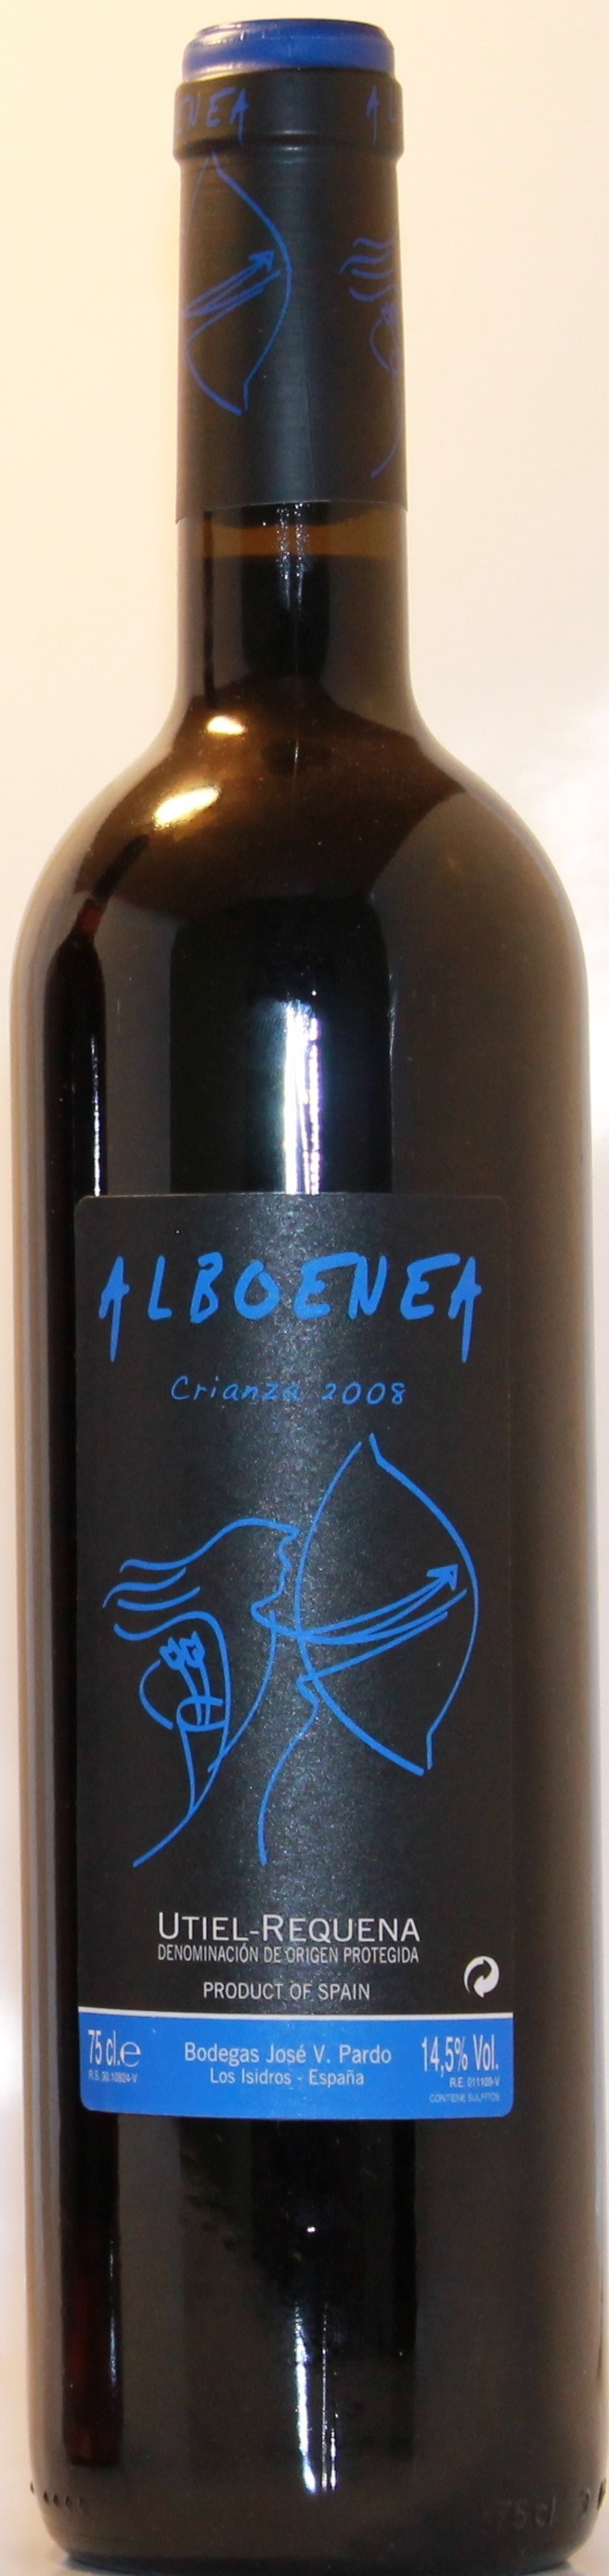 Imagen de la botella de Vino Alboenea